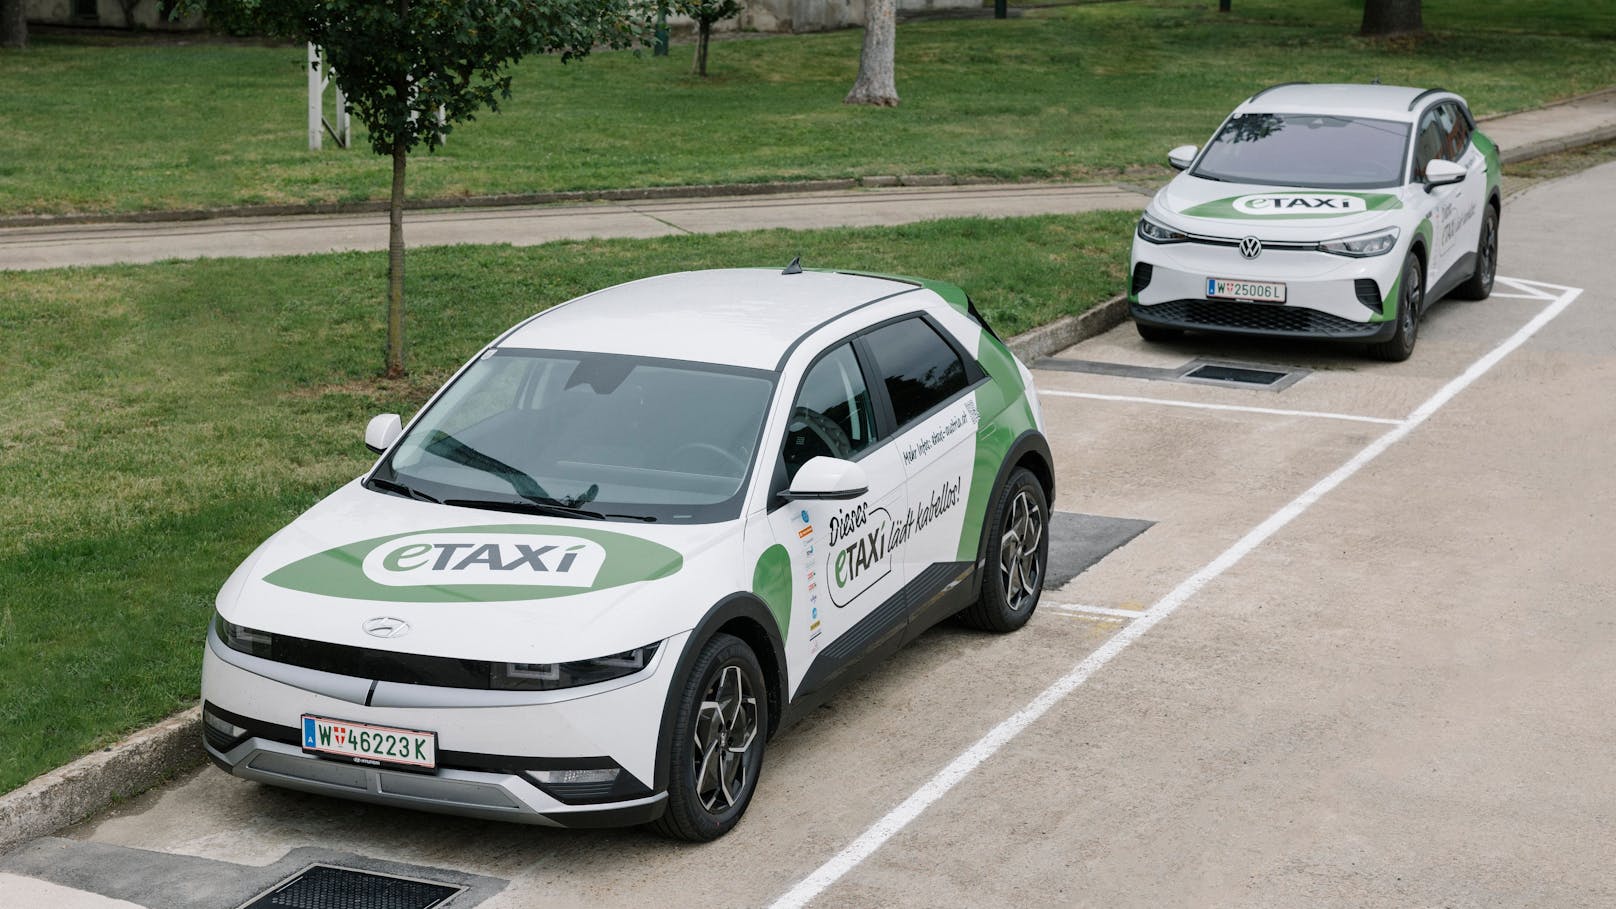 Mit acht Standplätzen und 50 Fahrzeugen startet Wien in das Projekt "e Taxi Austria". Ab 2025 werden nur noch emissionsfreie Taxis zugelassen.